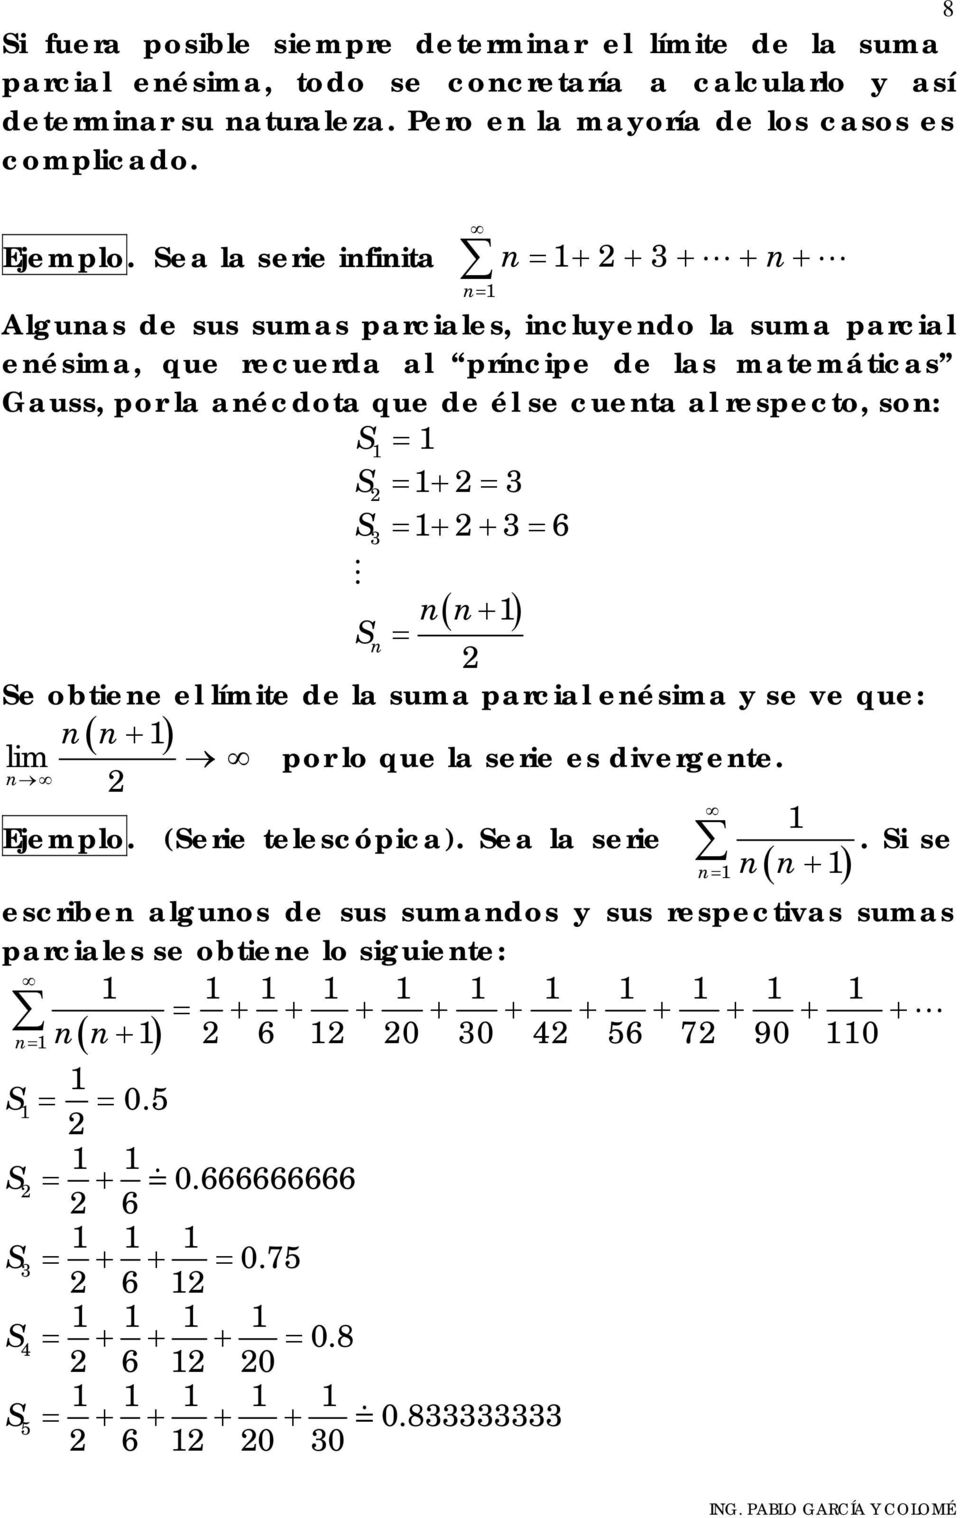 = = + = 3 3 = + + 3= 6 ( + ) = e obtiee el límite de la suma parcial eésima y se ve que: ( + ) lim por lo que la serie es divergete. Ejemplo. (erie telescópica). ea la serie.